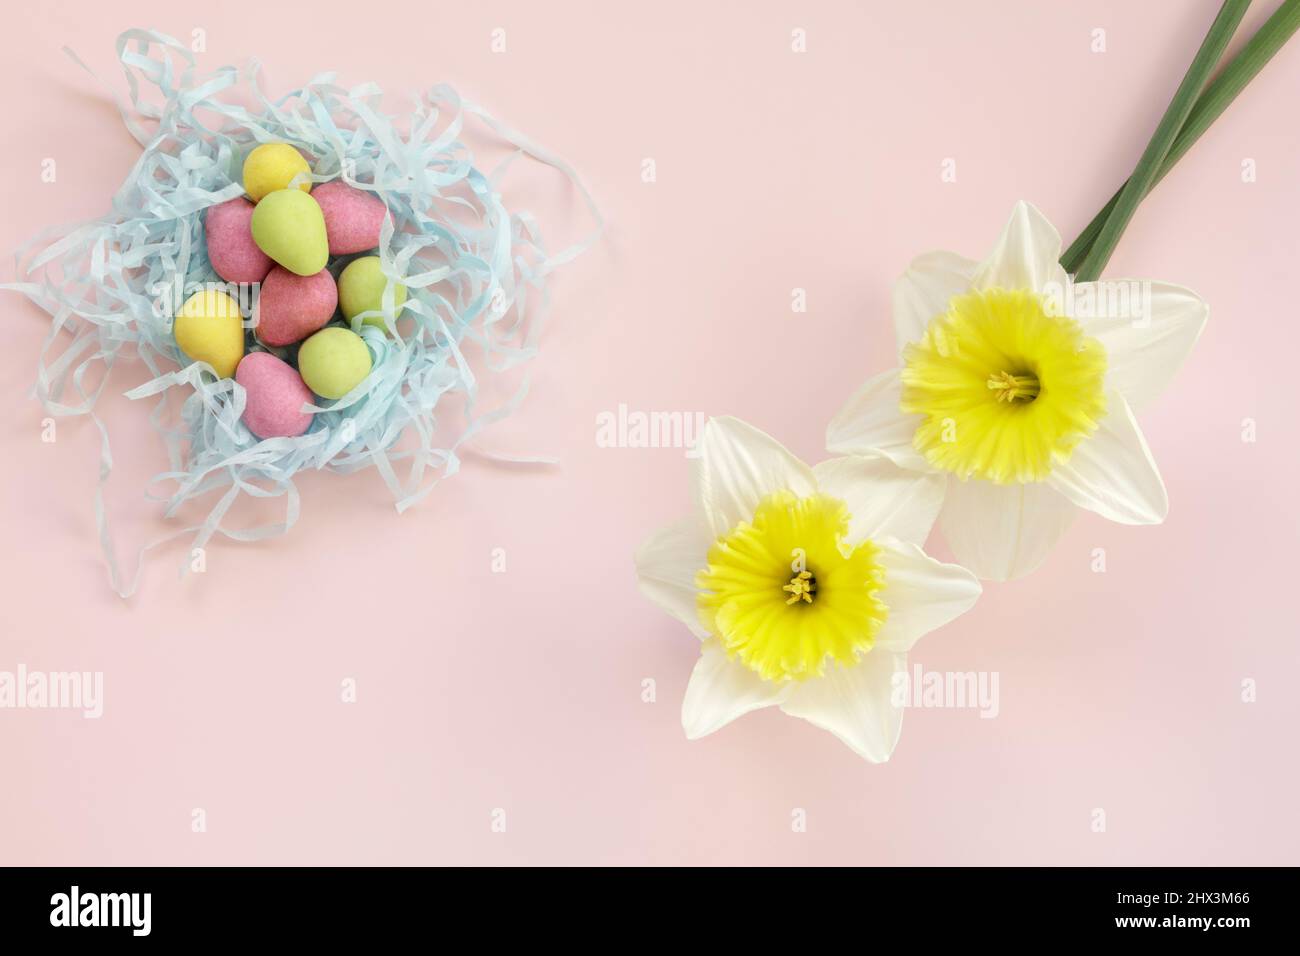 Dos narcisos y mini huevos de chocolate de color de arriba Foto de stock